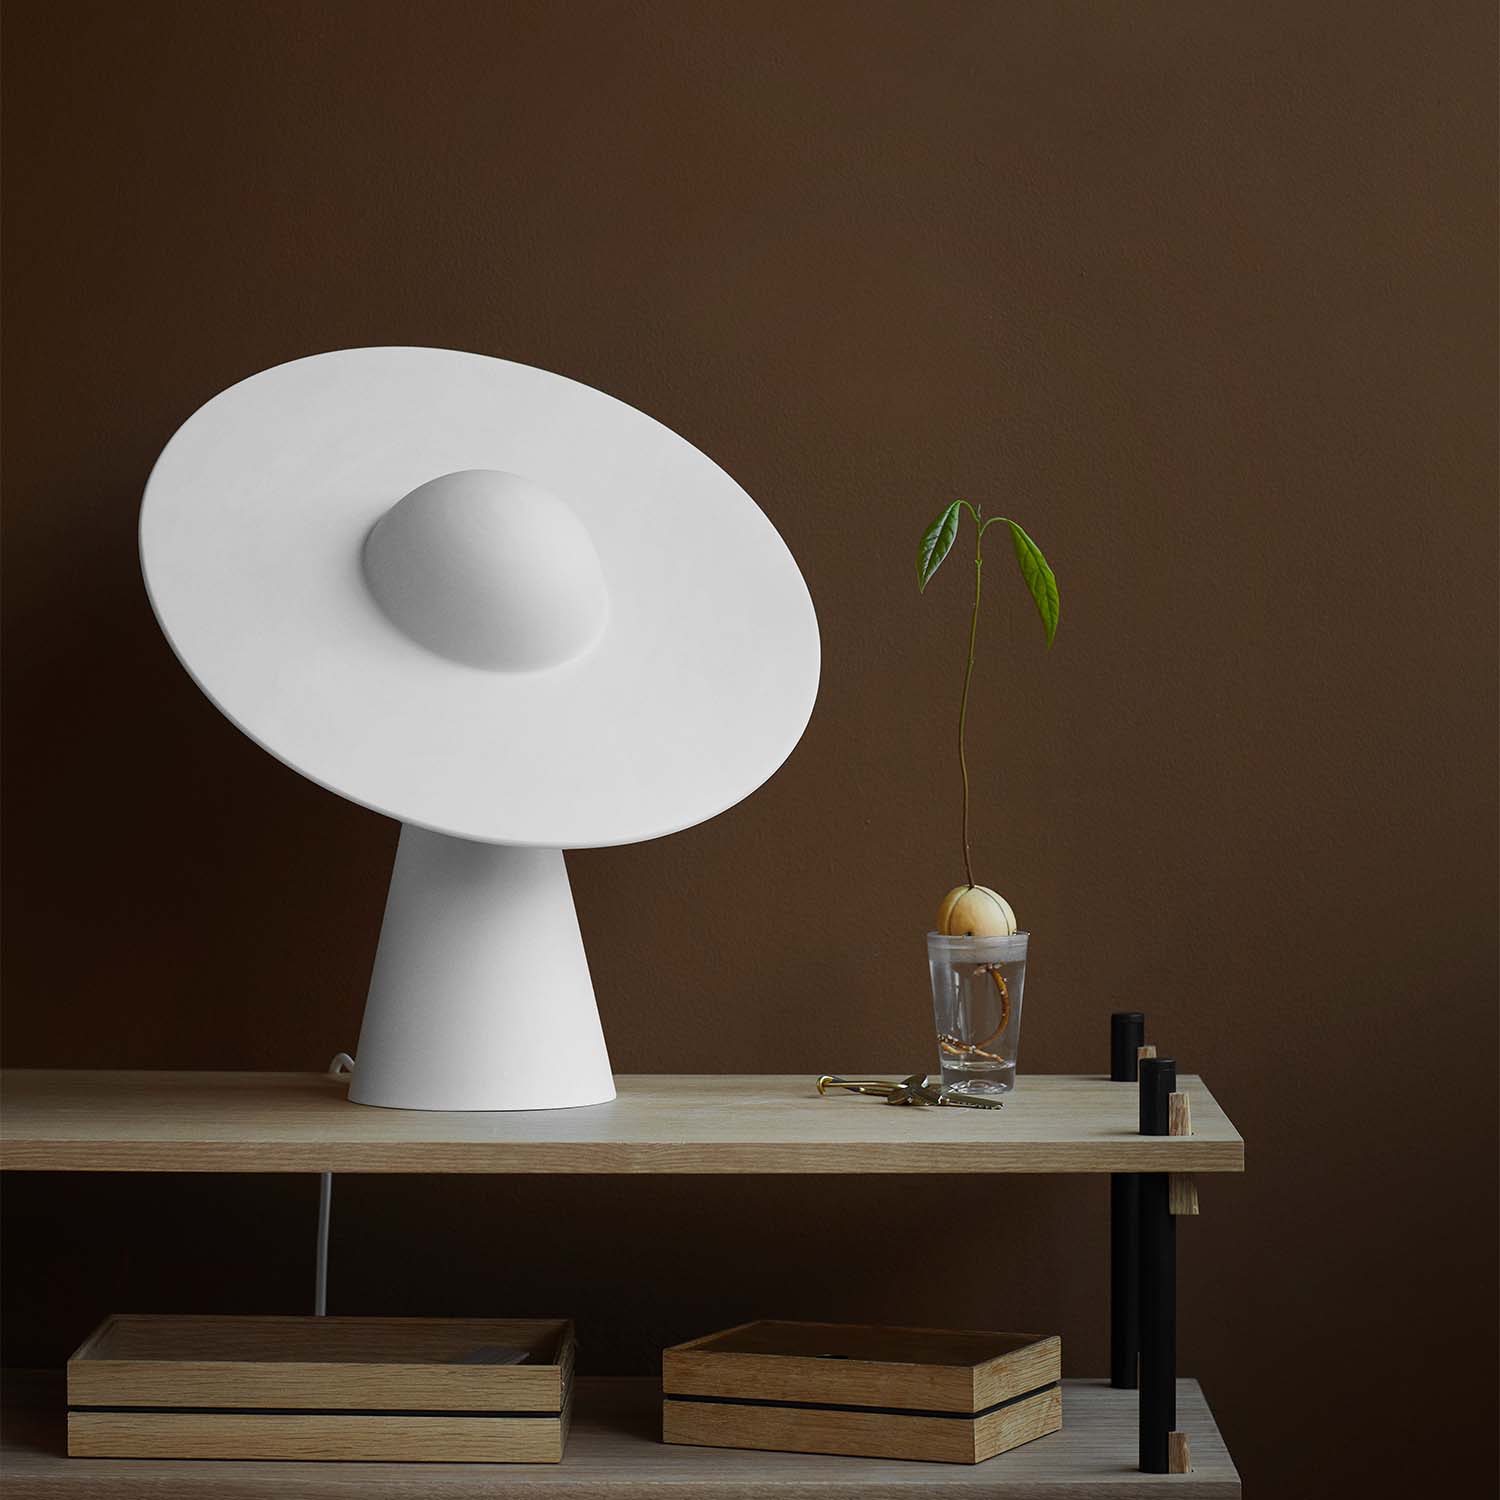 CERAMIC - Lampe de table blanche design avec chapeau orientable